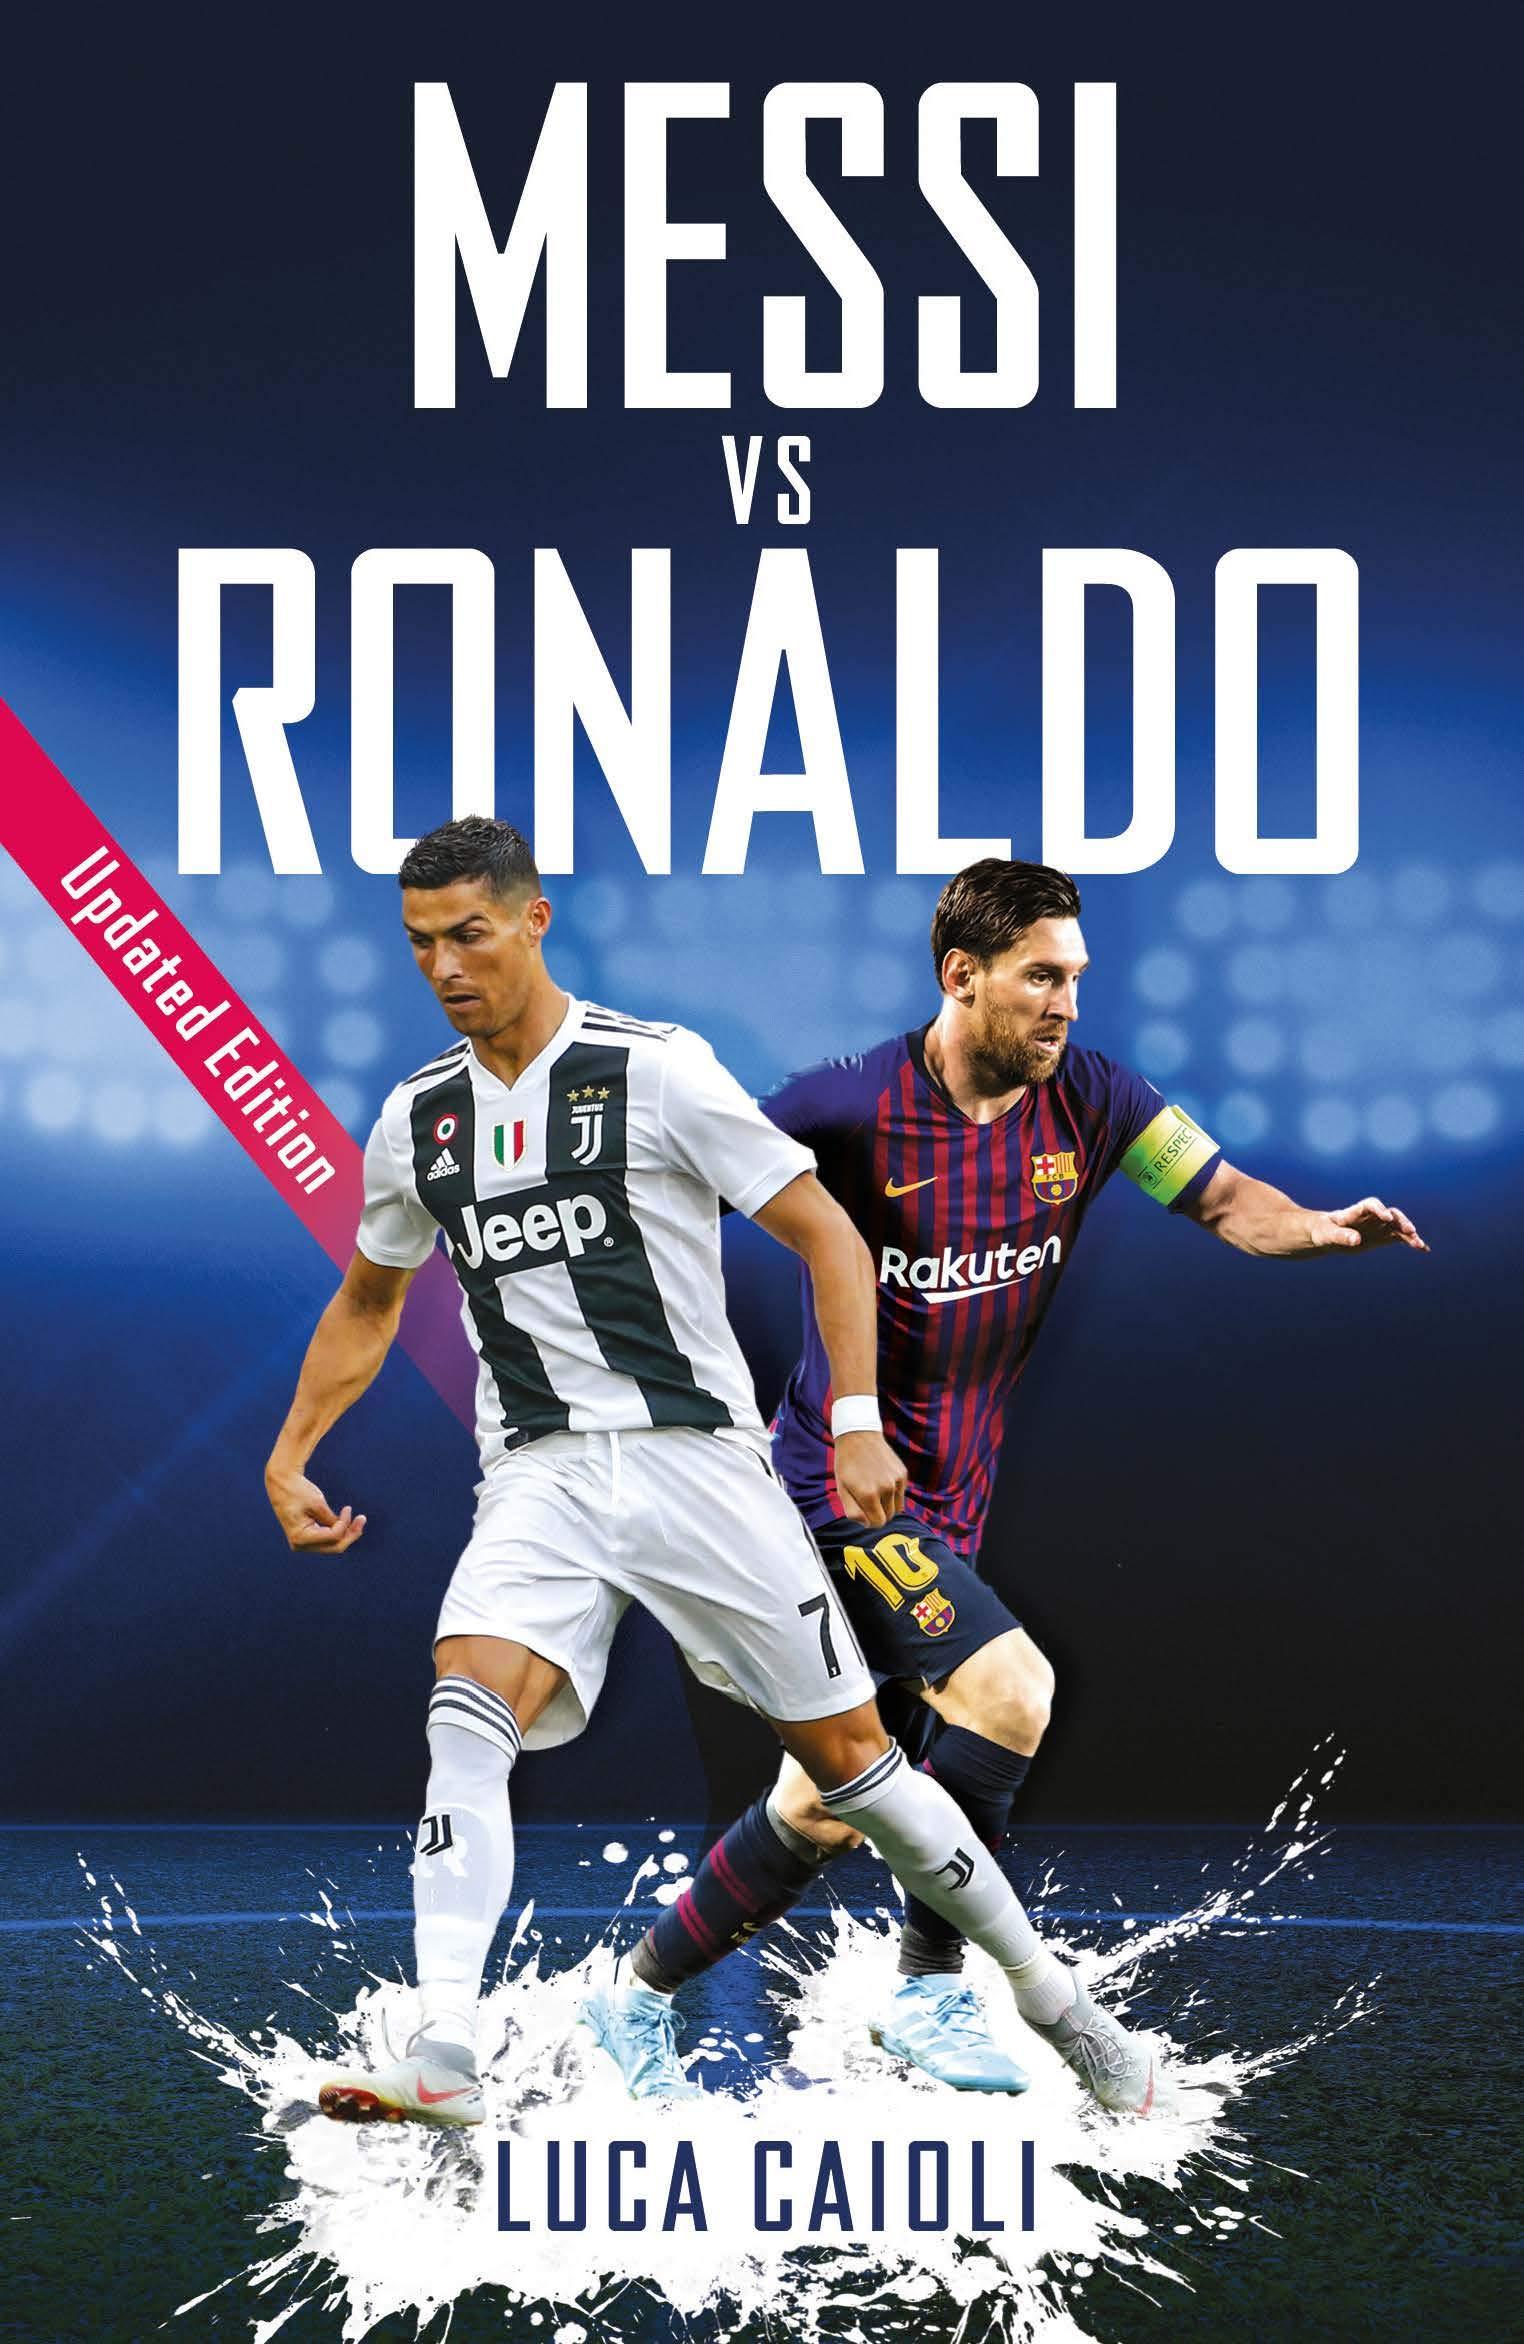 Messi Ronaldo Mobile Hd Wallpapers - Wallpaper Cave